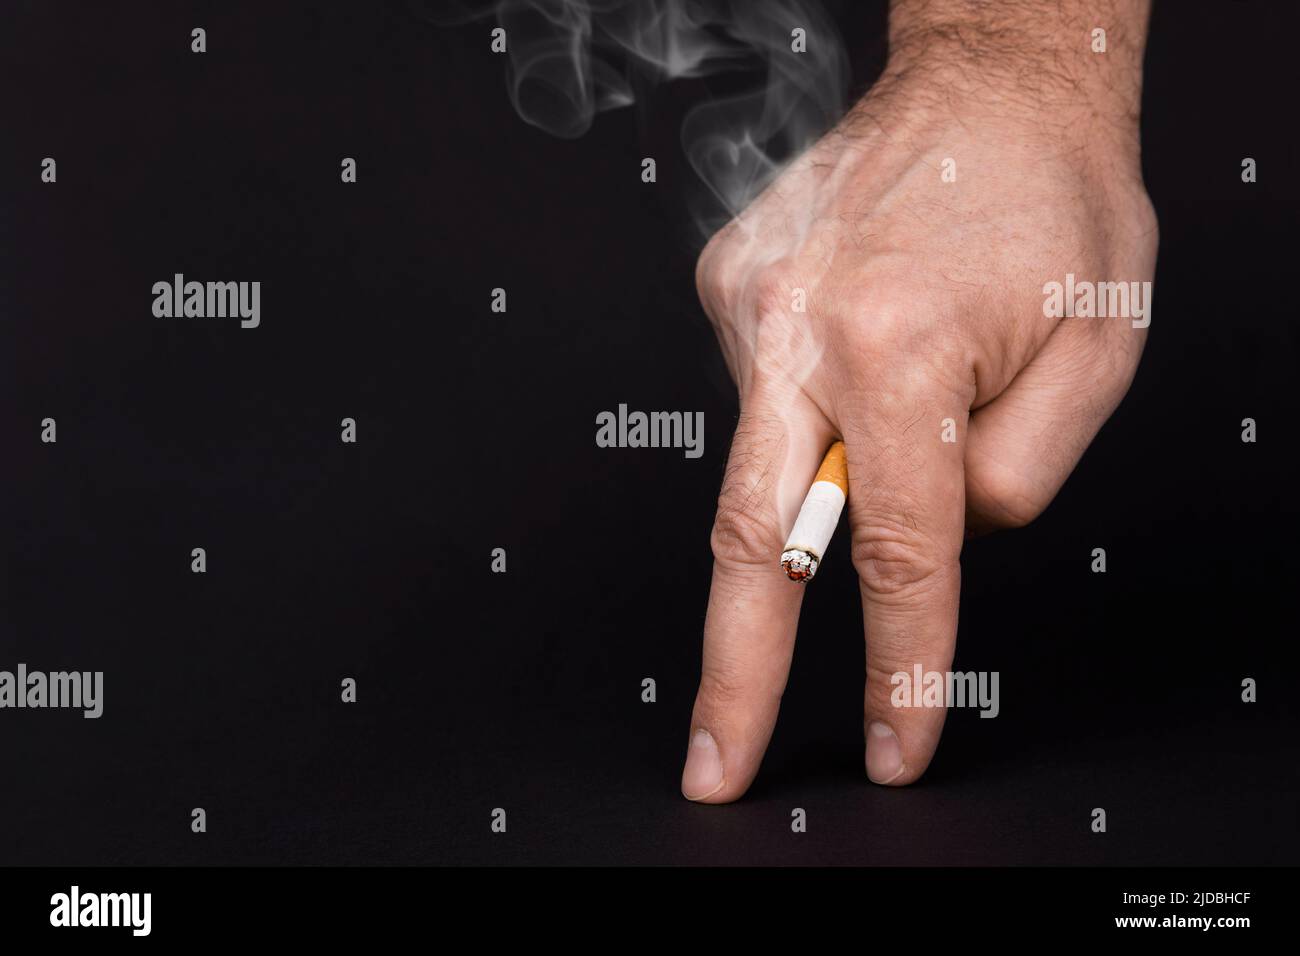 Impotencia en los hombres. Cigarrillo en mano con humo aislado sobre fondo negro, cerca. Daño de fumar para los hombres. Disfunción eréctil, impotencia en los hombres causada por fumar. Cigarrillo fumado en los dedos Foto de stock